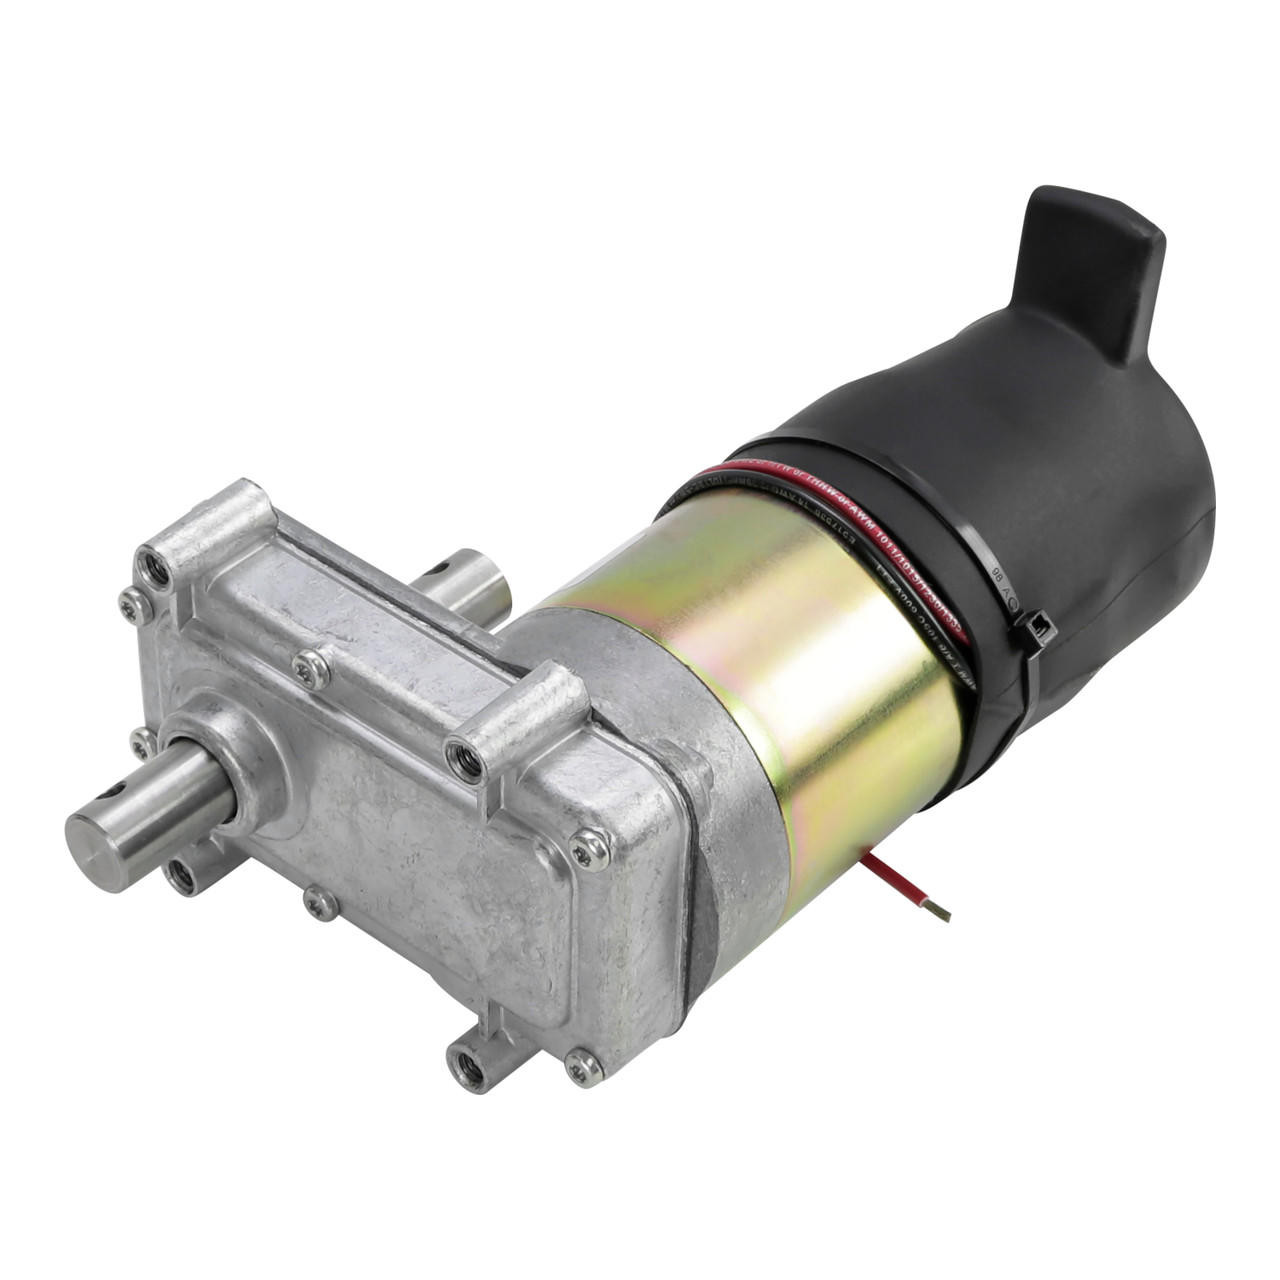 Klauber RV Slide Out Motor K01469-D500 Replacement For K01265-F500,Klauber Motor Replacing K01265P500, 386327 